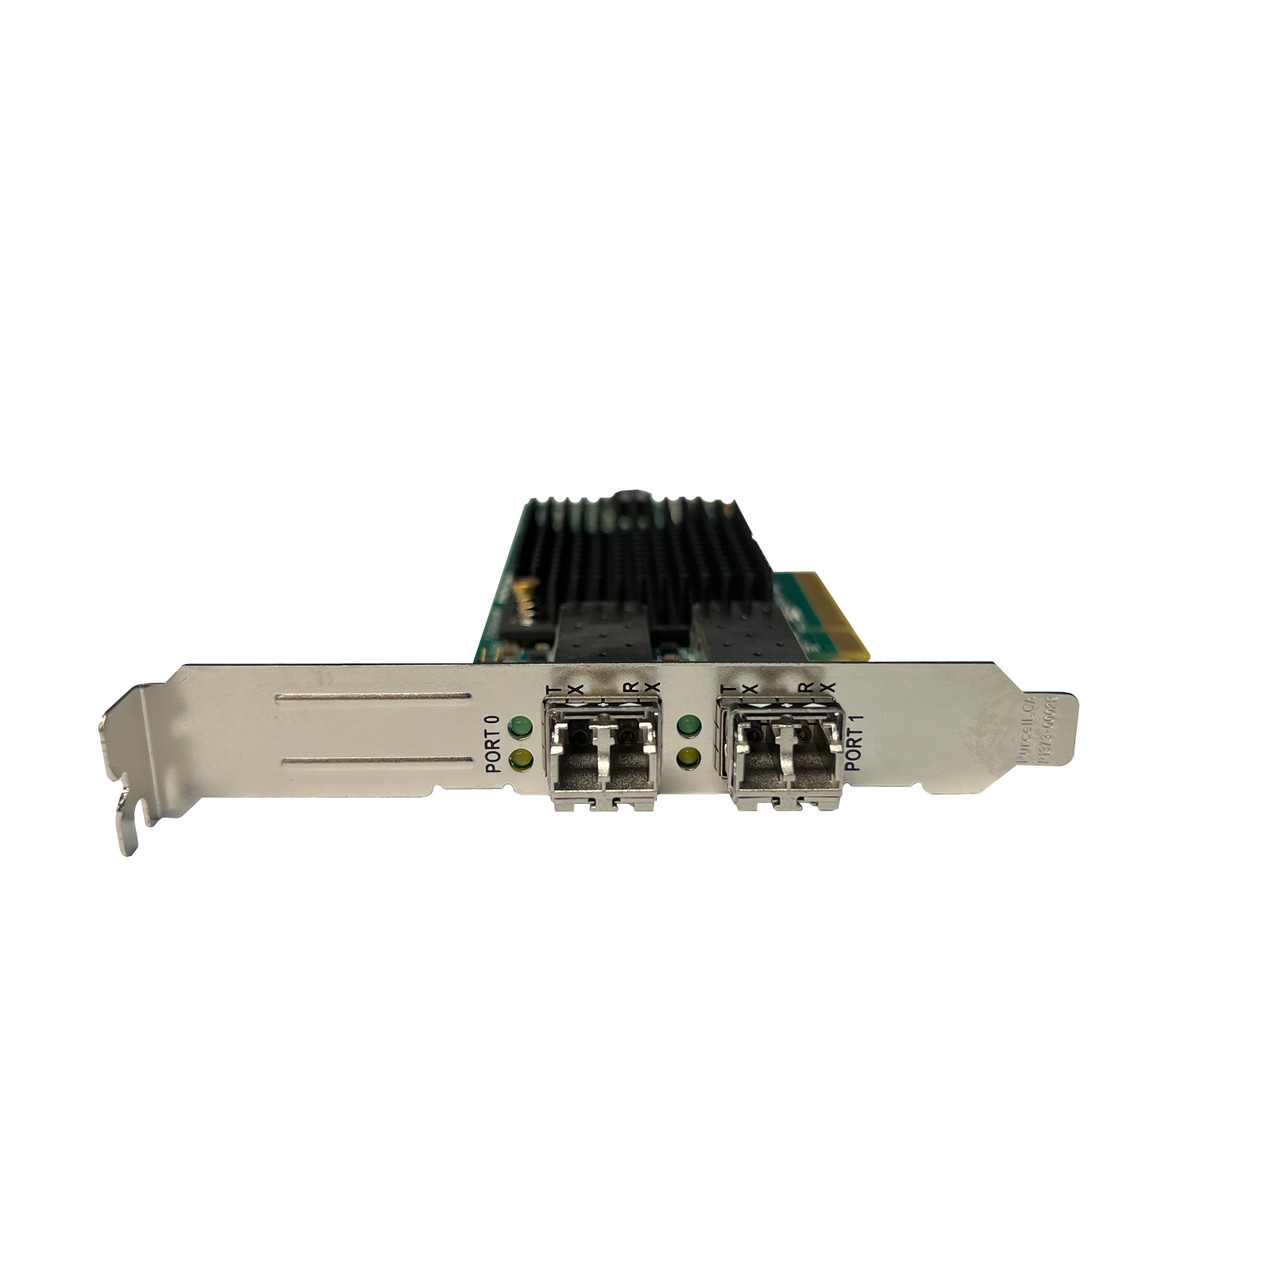 HP 697890-001 LPE12002 Dual Port 8GB FC Adapter HP RENEW